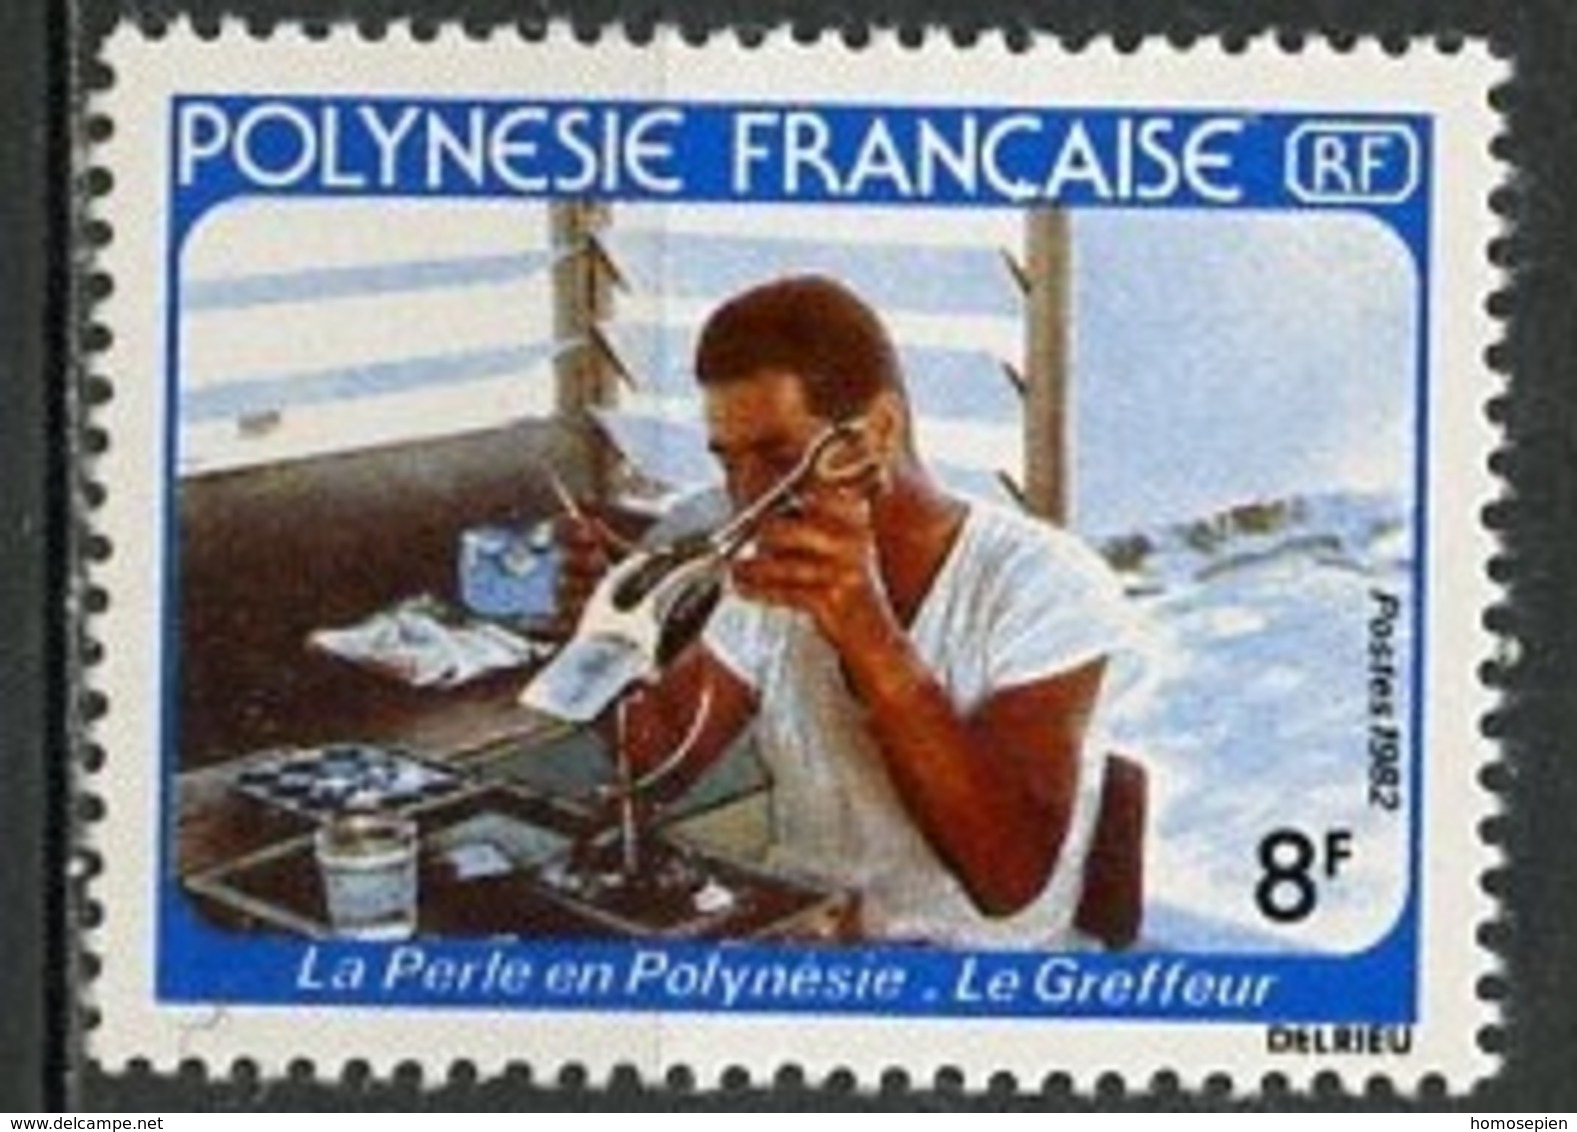 Polynésie Française - Polynesien - Polynesia 1982 Y&T N°178 - Michel N°343 *** - 8f Greffeur De Perles - Neufs